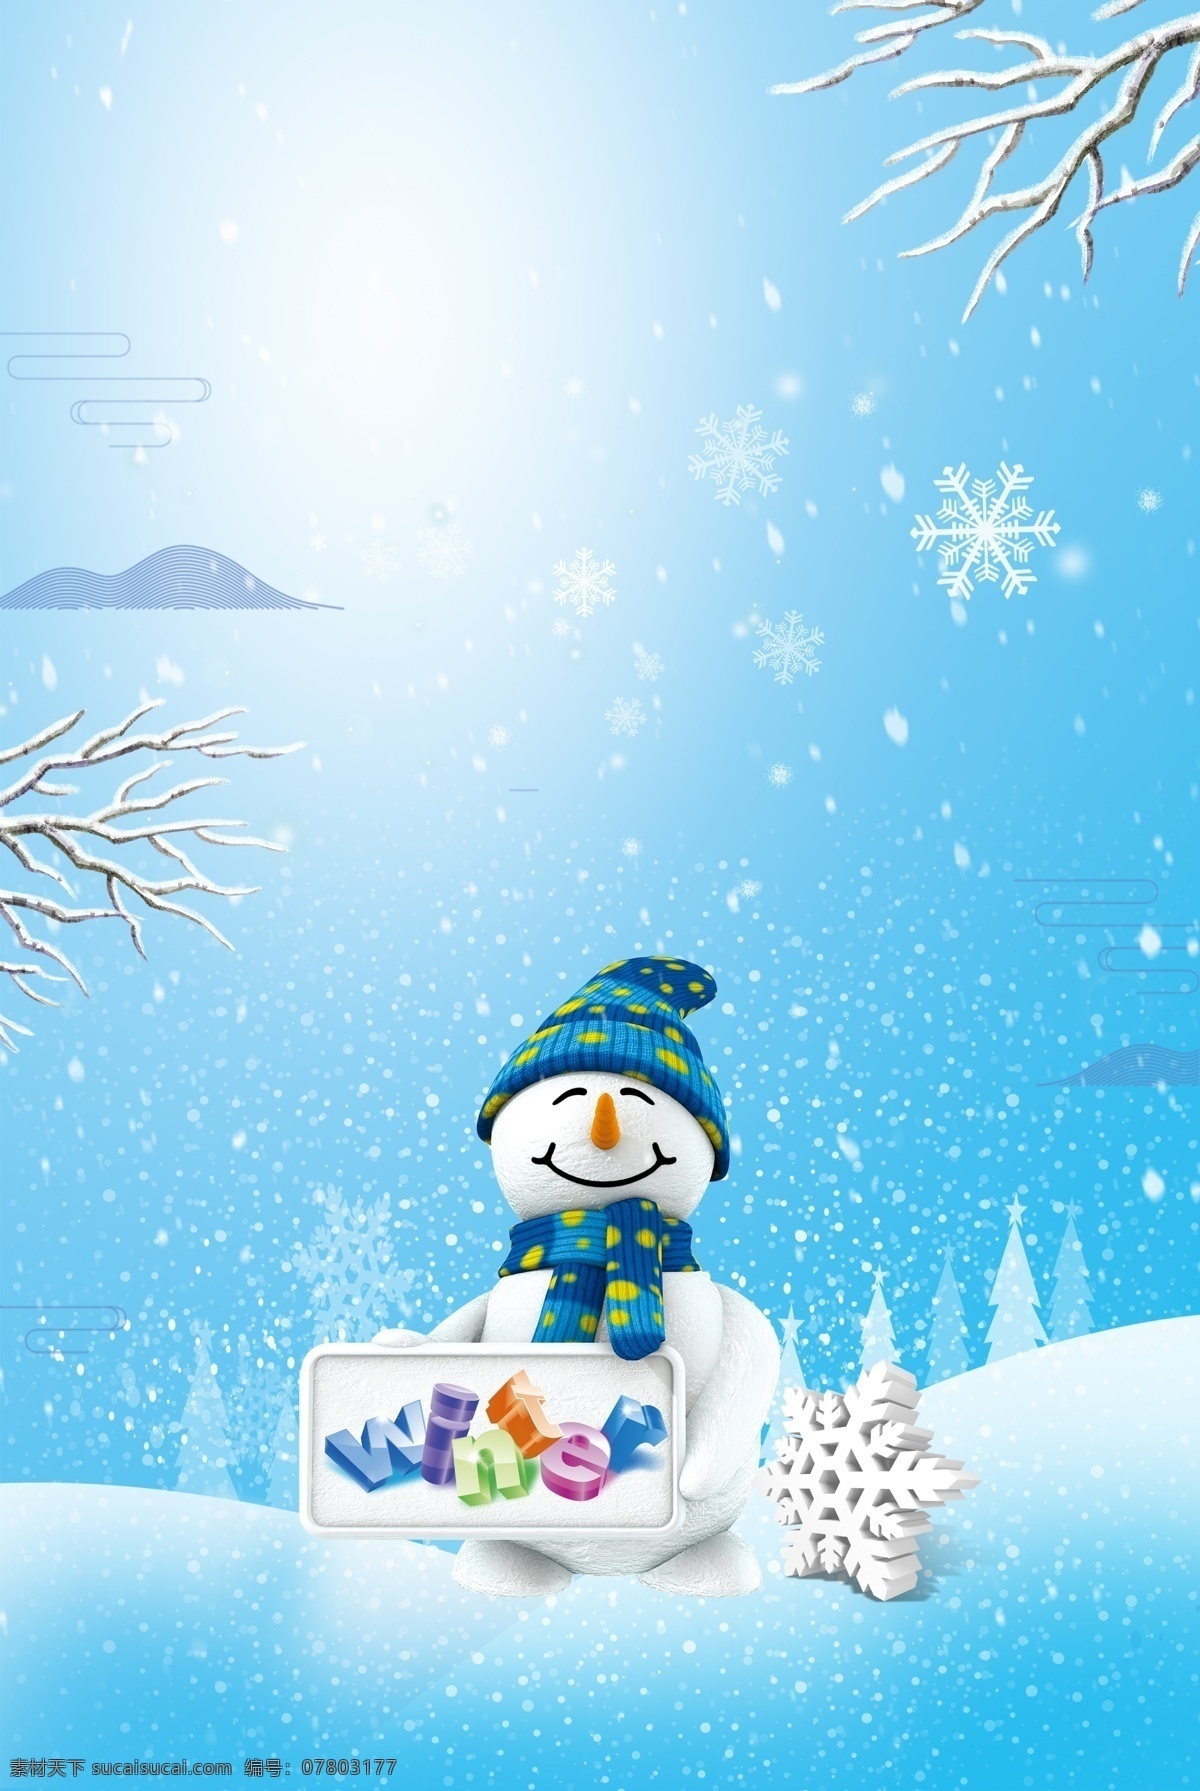 蓝色 唯美 冬天 冬季 节气 广告 背景 图 雪地 二十四节气 小雪 下雪 冬天到了 下雪了 大雪 广告背景